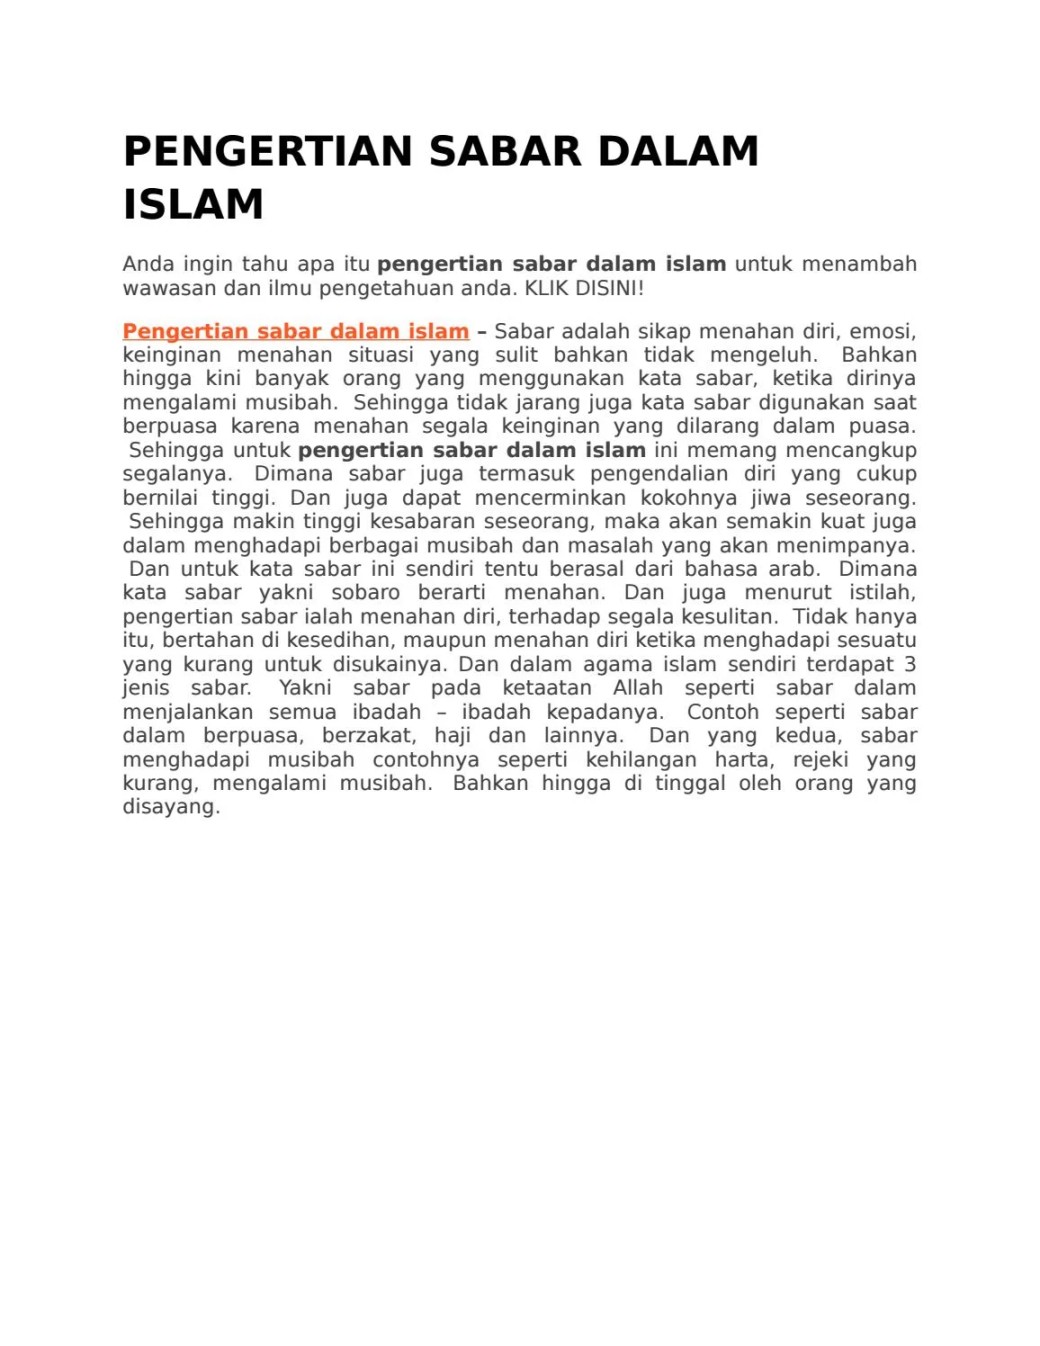 PENGERTIAN SABAR DALAM ISLAM by fridaddv - Issuu